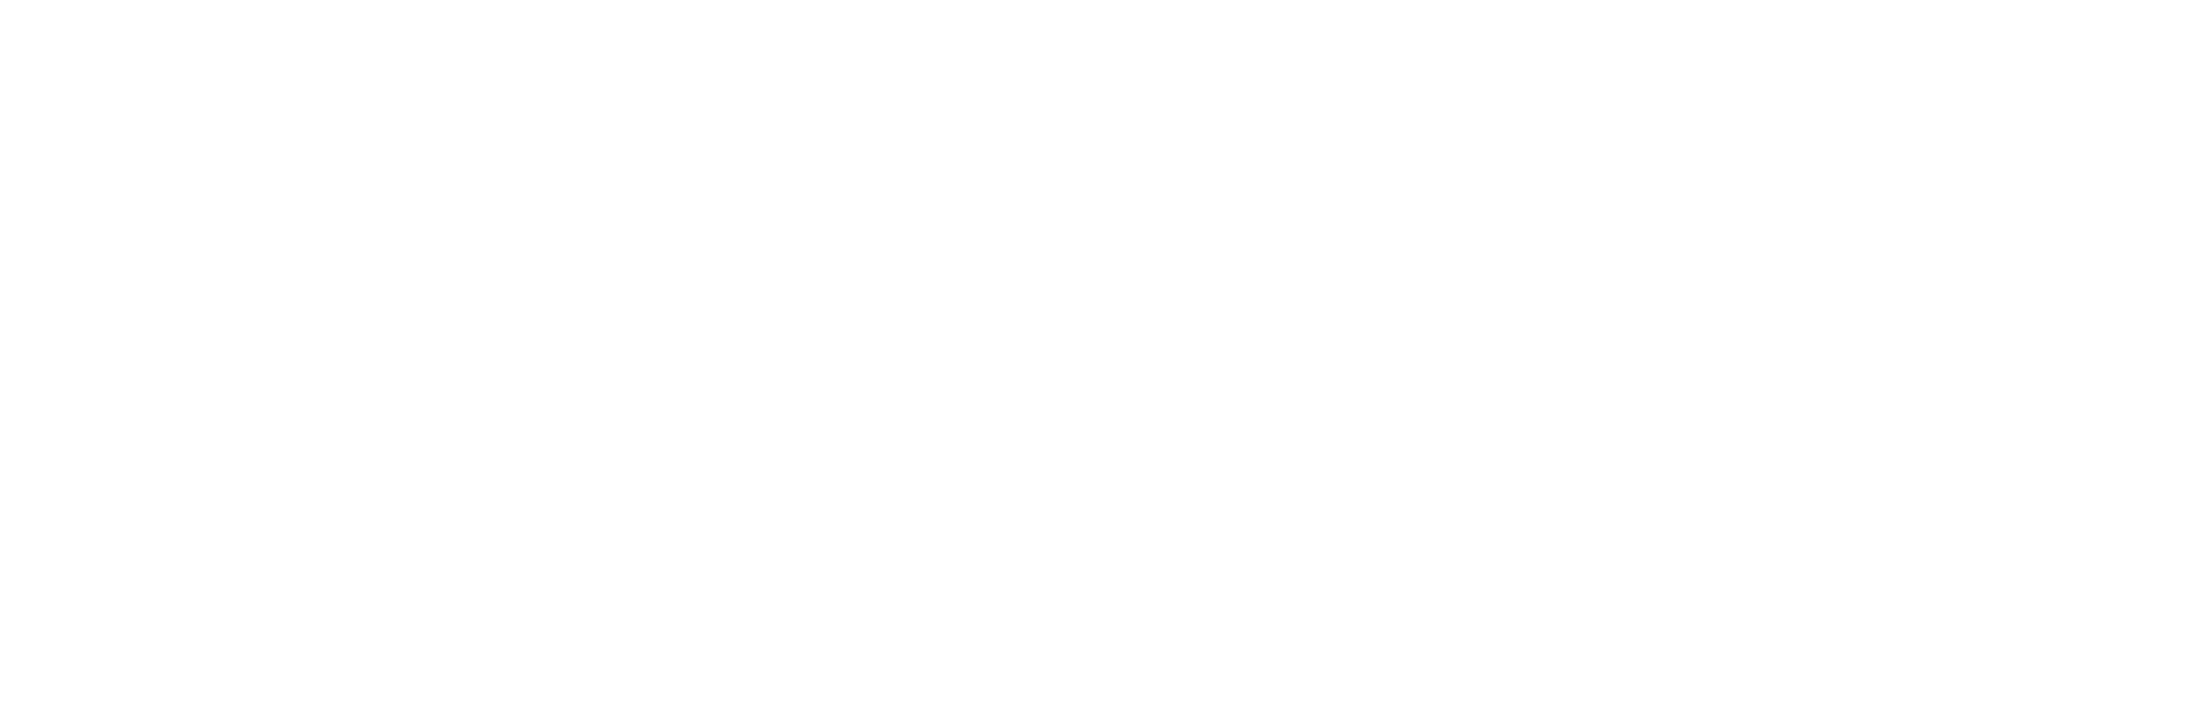 Telefónica-Firmenlogo auf schwarzem Hintergrund.